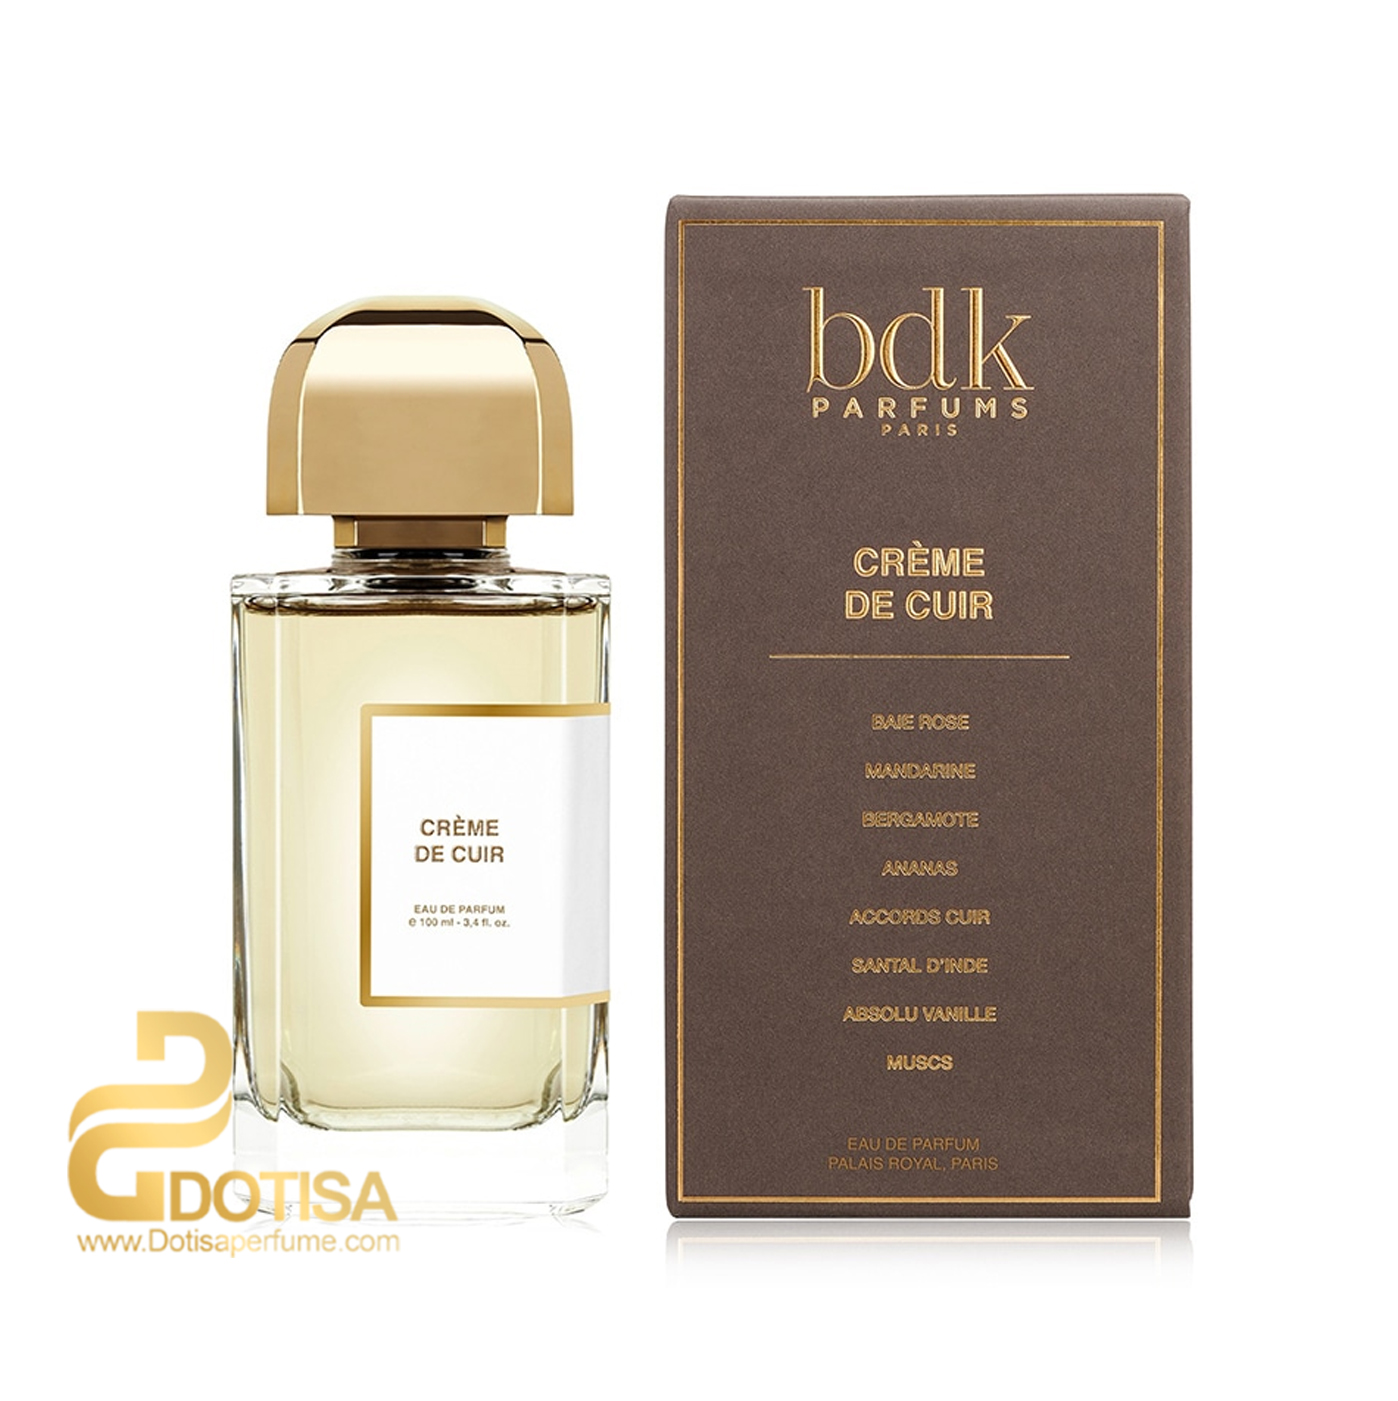 عطر ادکلن پارفومز بی دی کی پاریس کرم دی کوئیر | Crème de Cuir BDK Parfums for women and men